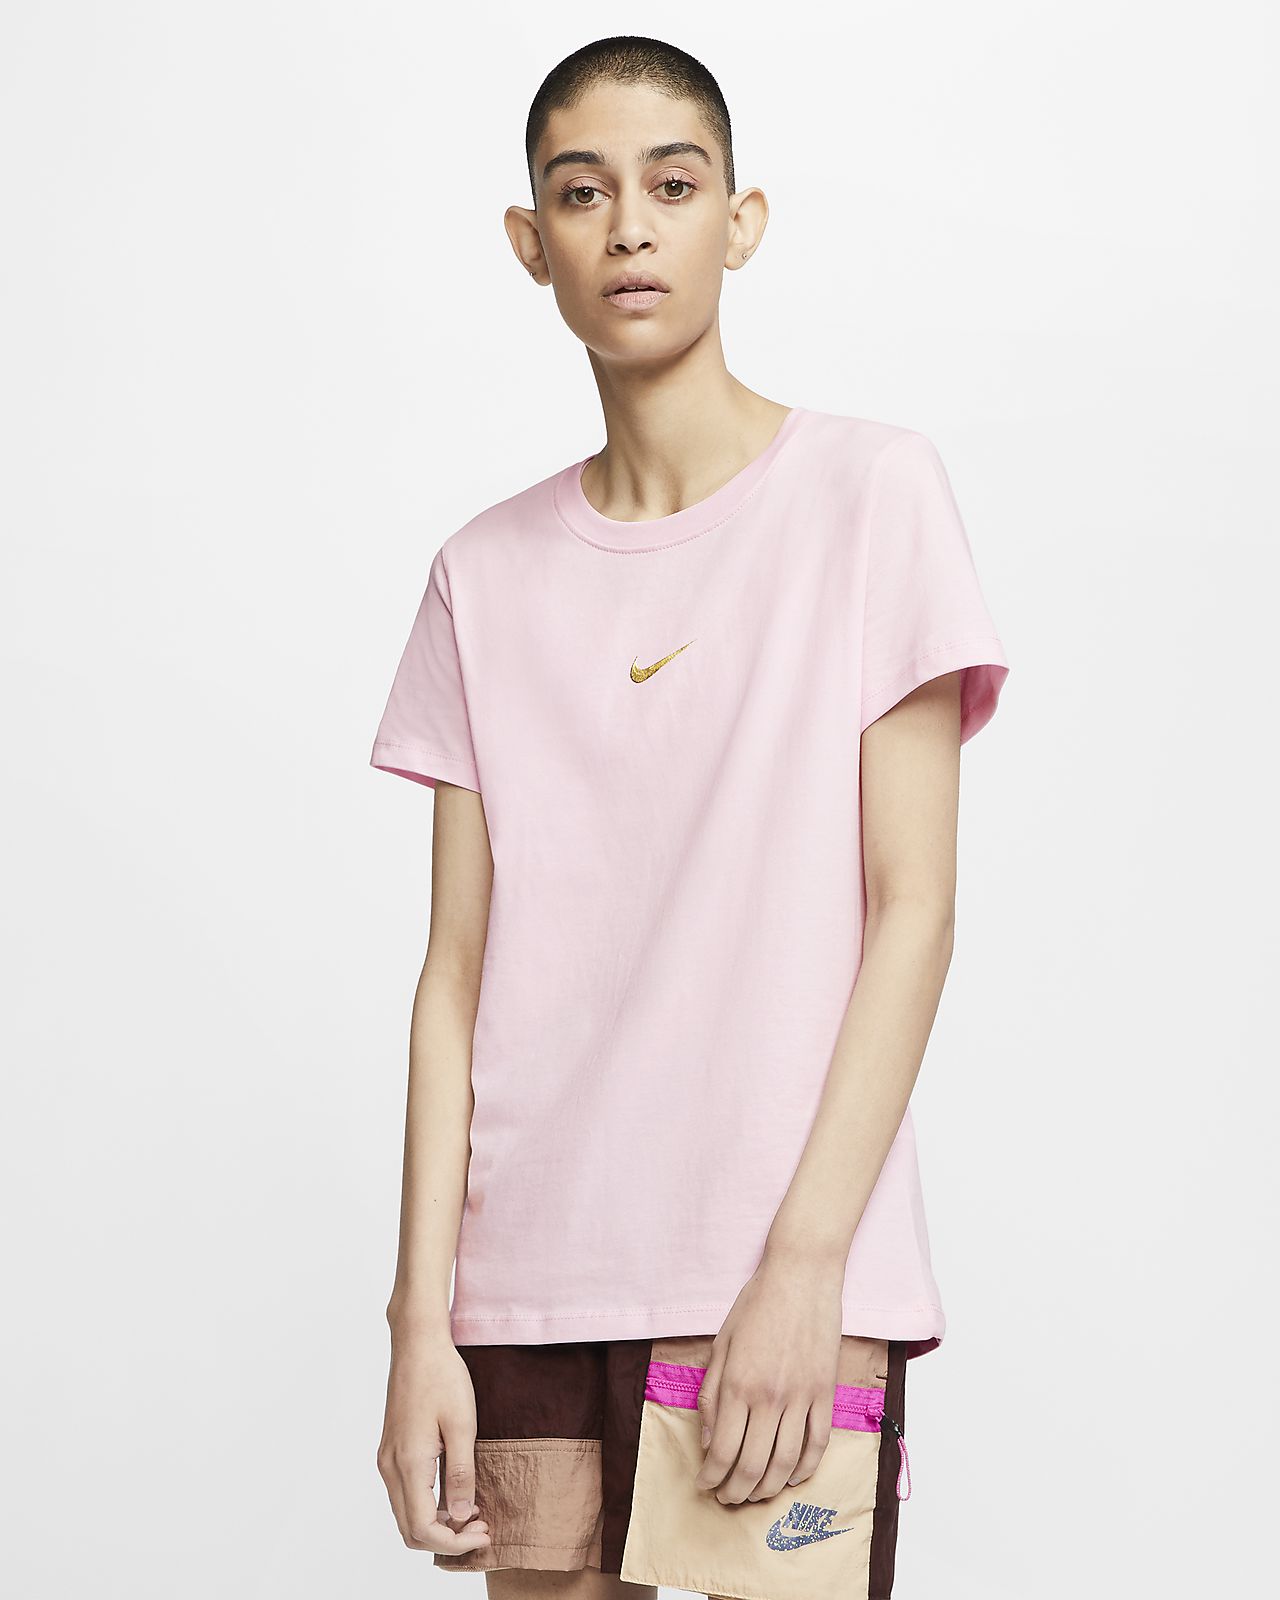 Purchase \u003e nike t shirt women's pink 